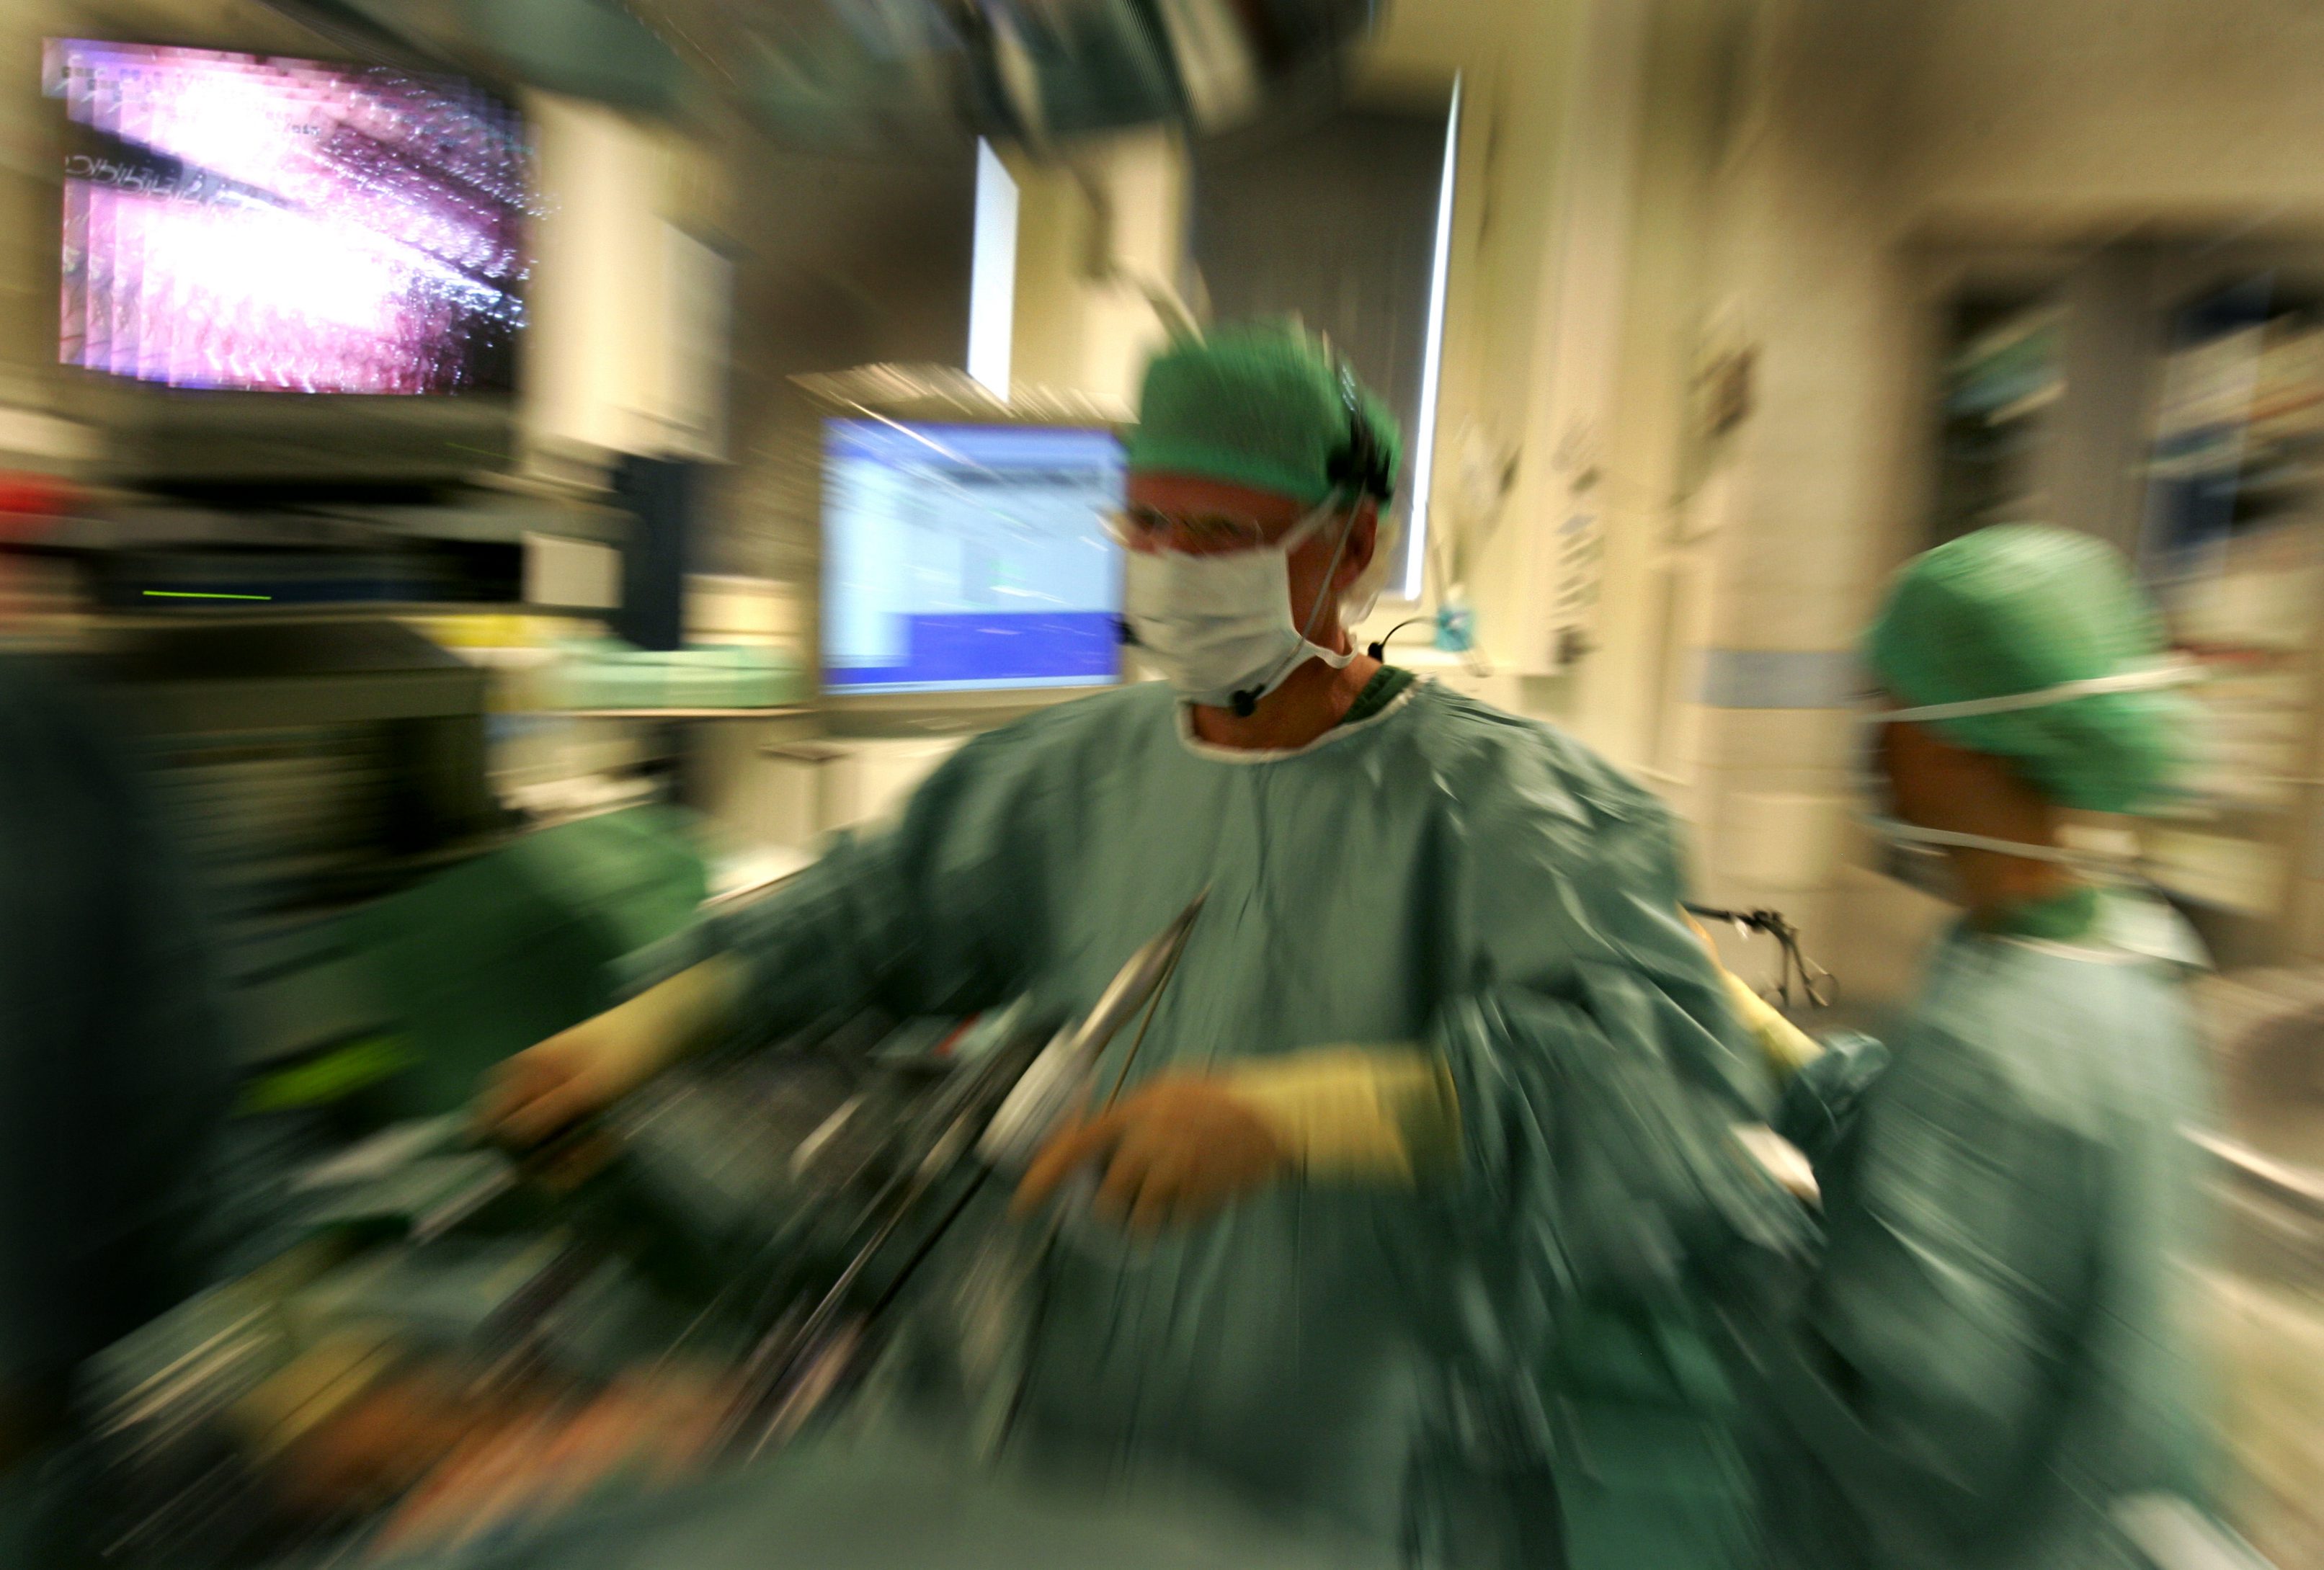 En italiensk kirurg har dömts till ett långvarigt fängelsestraff sedan han utfört onödiga operationer på obotligt sjuka patienter. (bilden har inget direkt samband med artikeln)